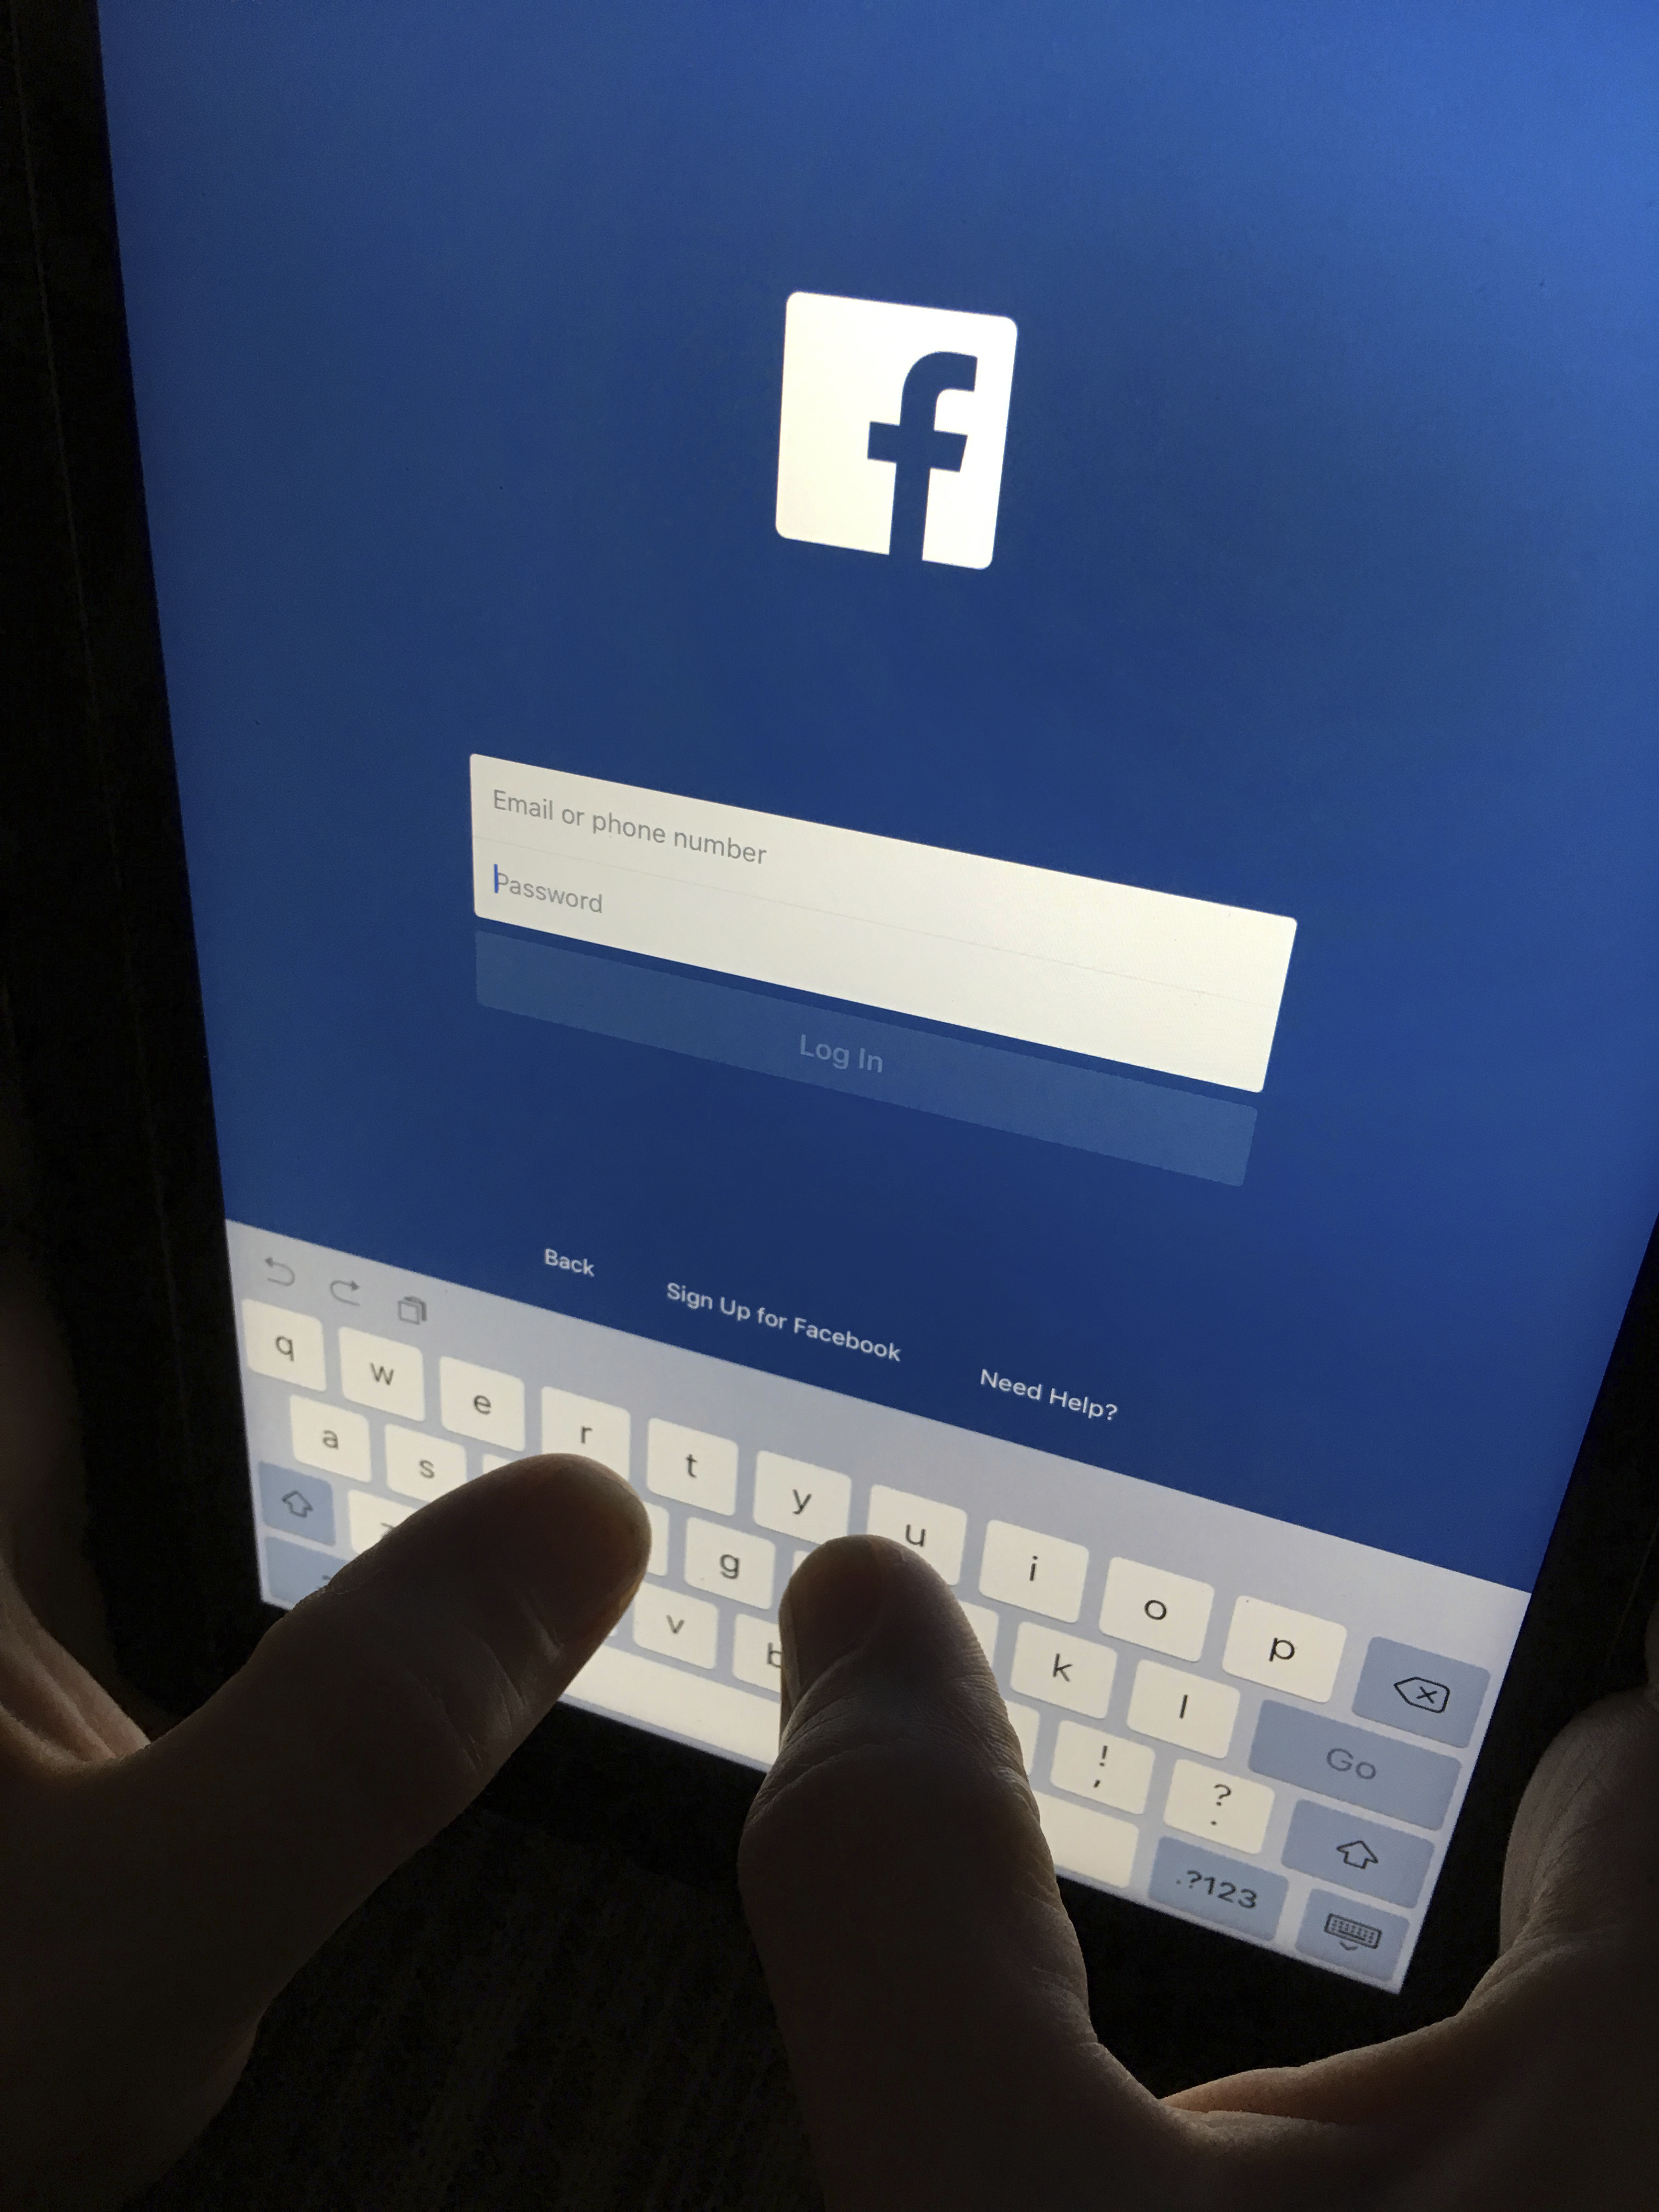 САЩ проверяват Фейсбук заради скандала с личните данни